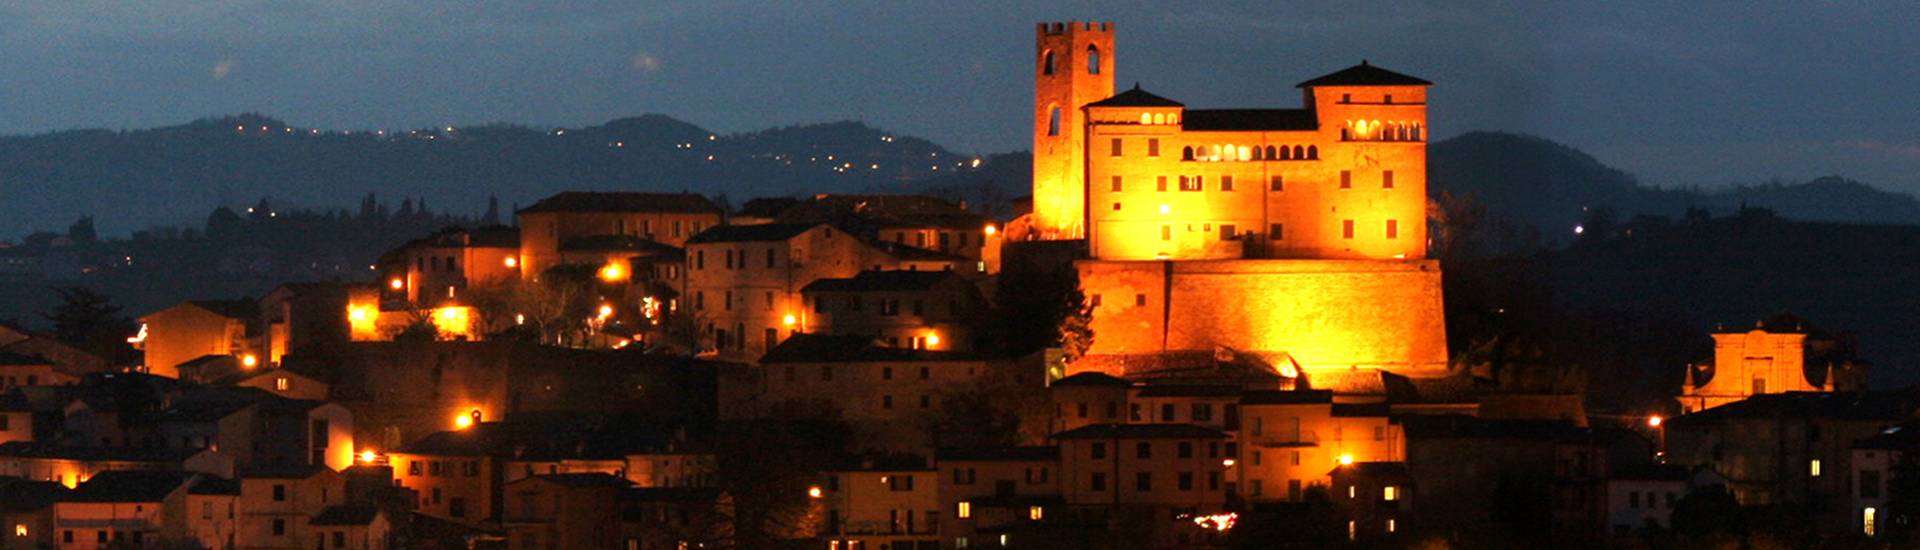 Castello Malatestiano di Longiano - Night view of Longiano's Malatestian castle photo credits: |Viterbo Fotocine Longiano| - Archivio Fondazione